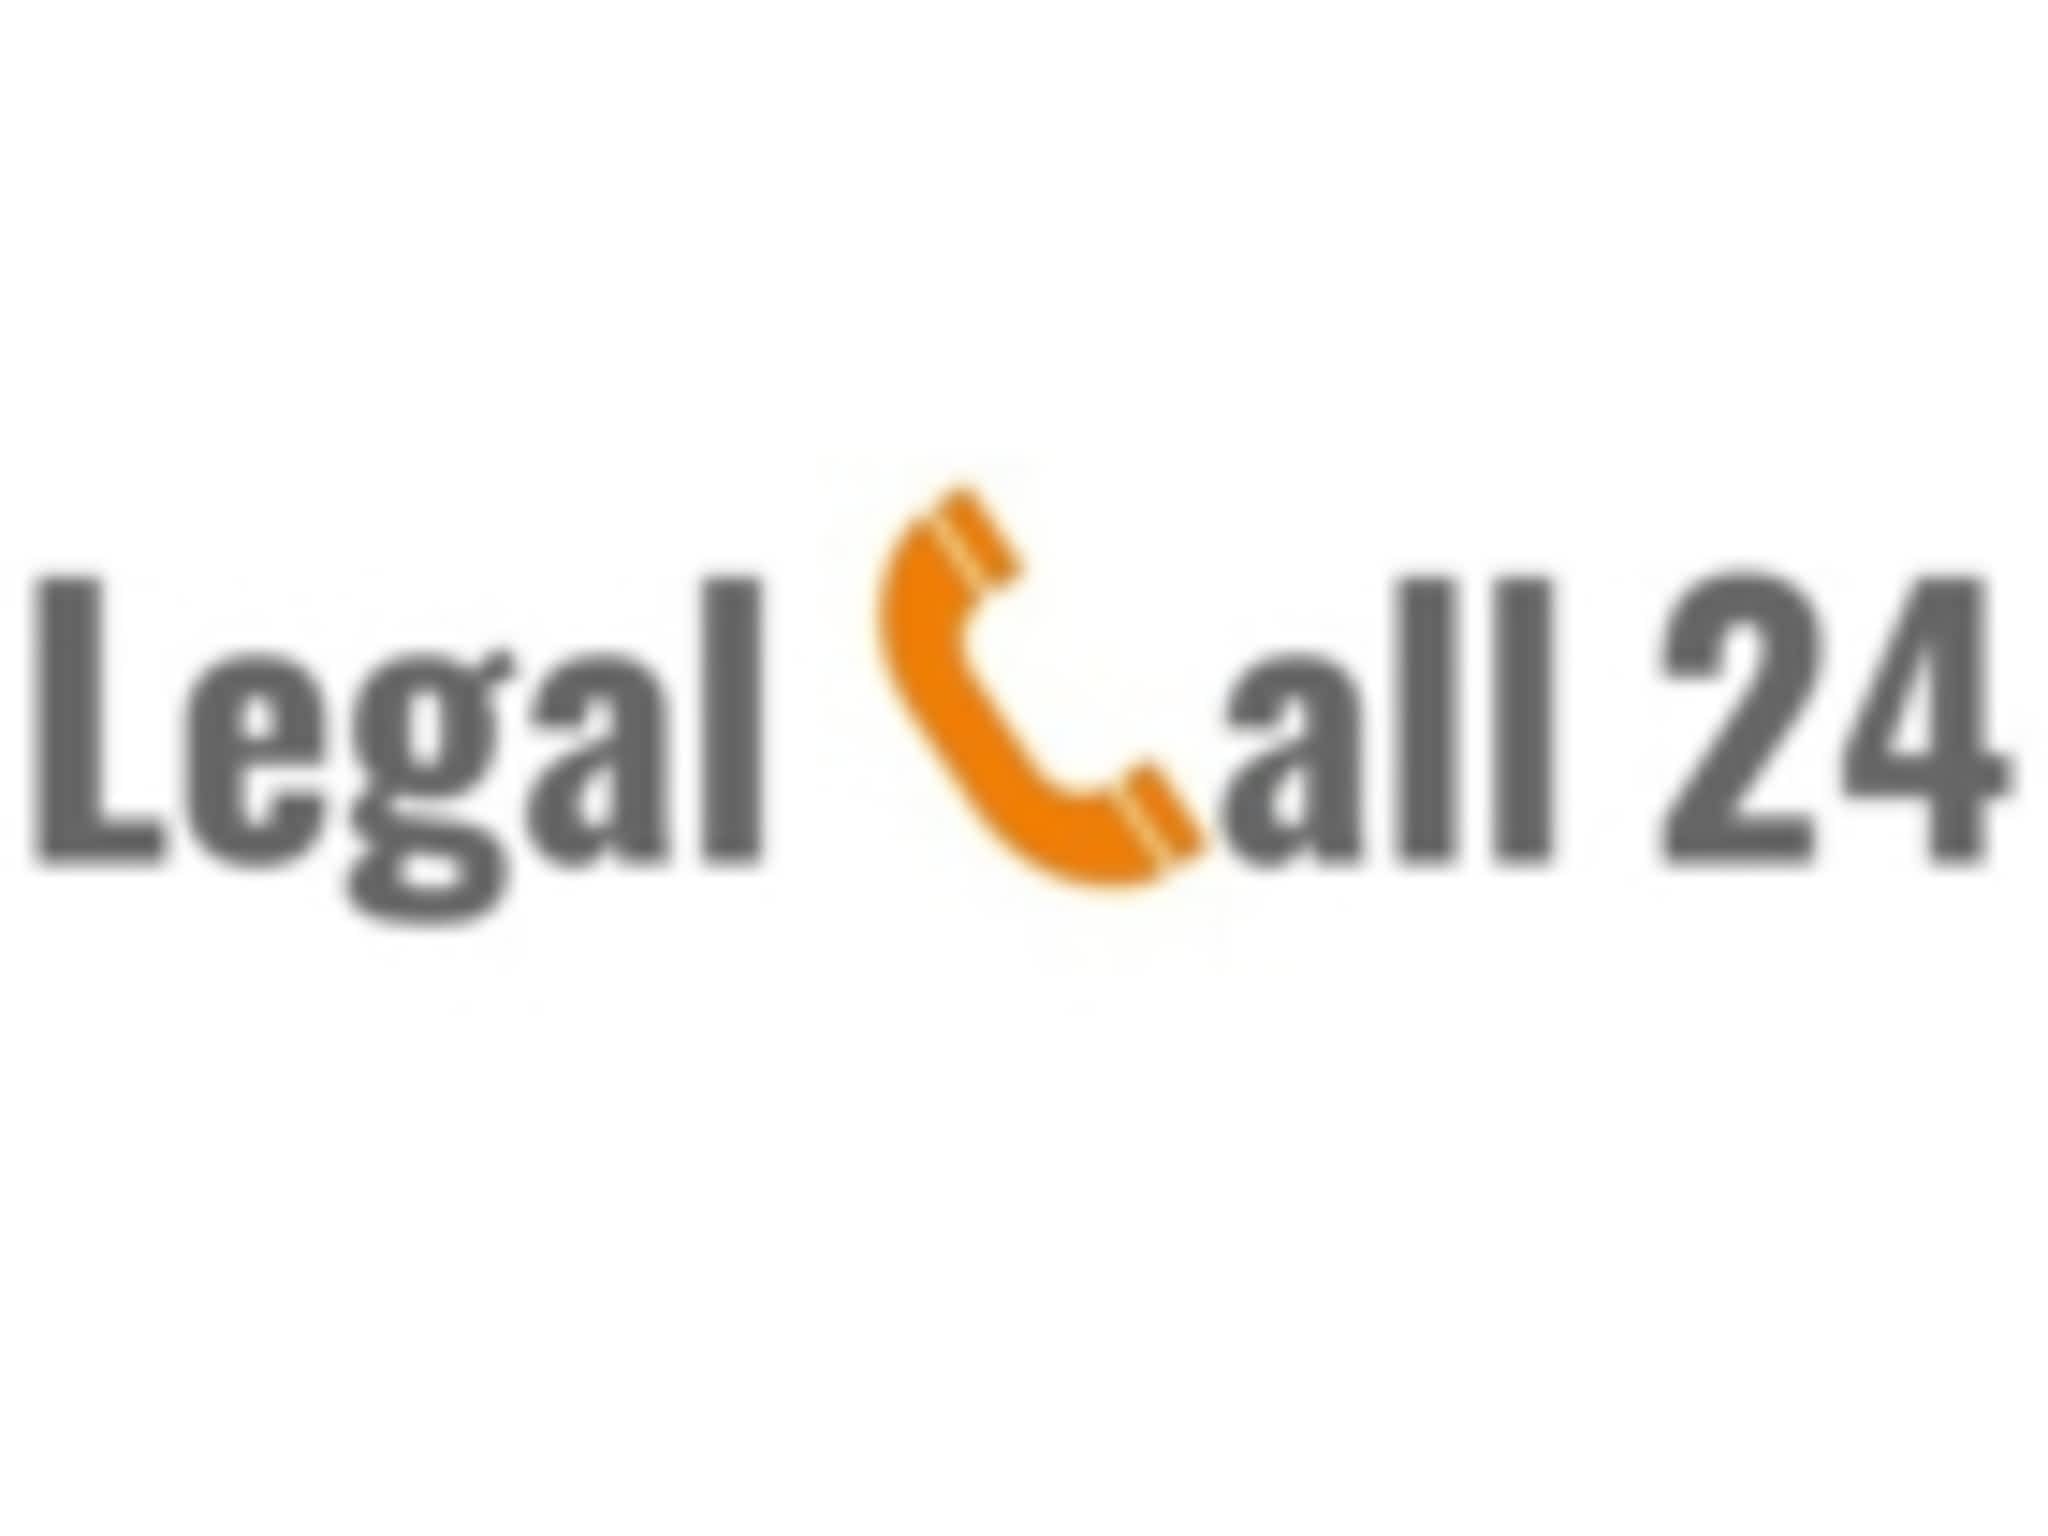 photo Legal Call 24